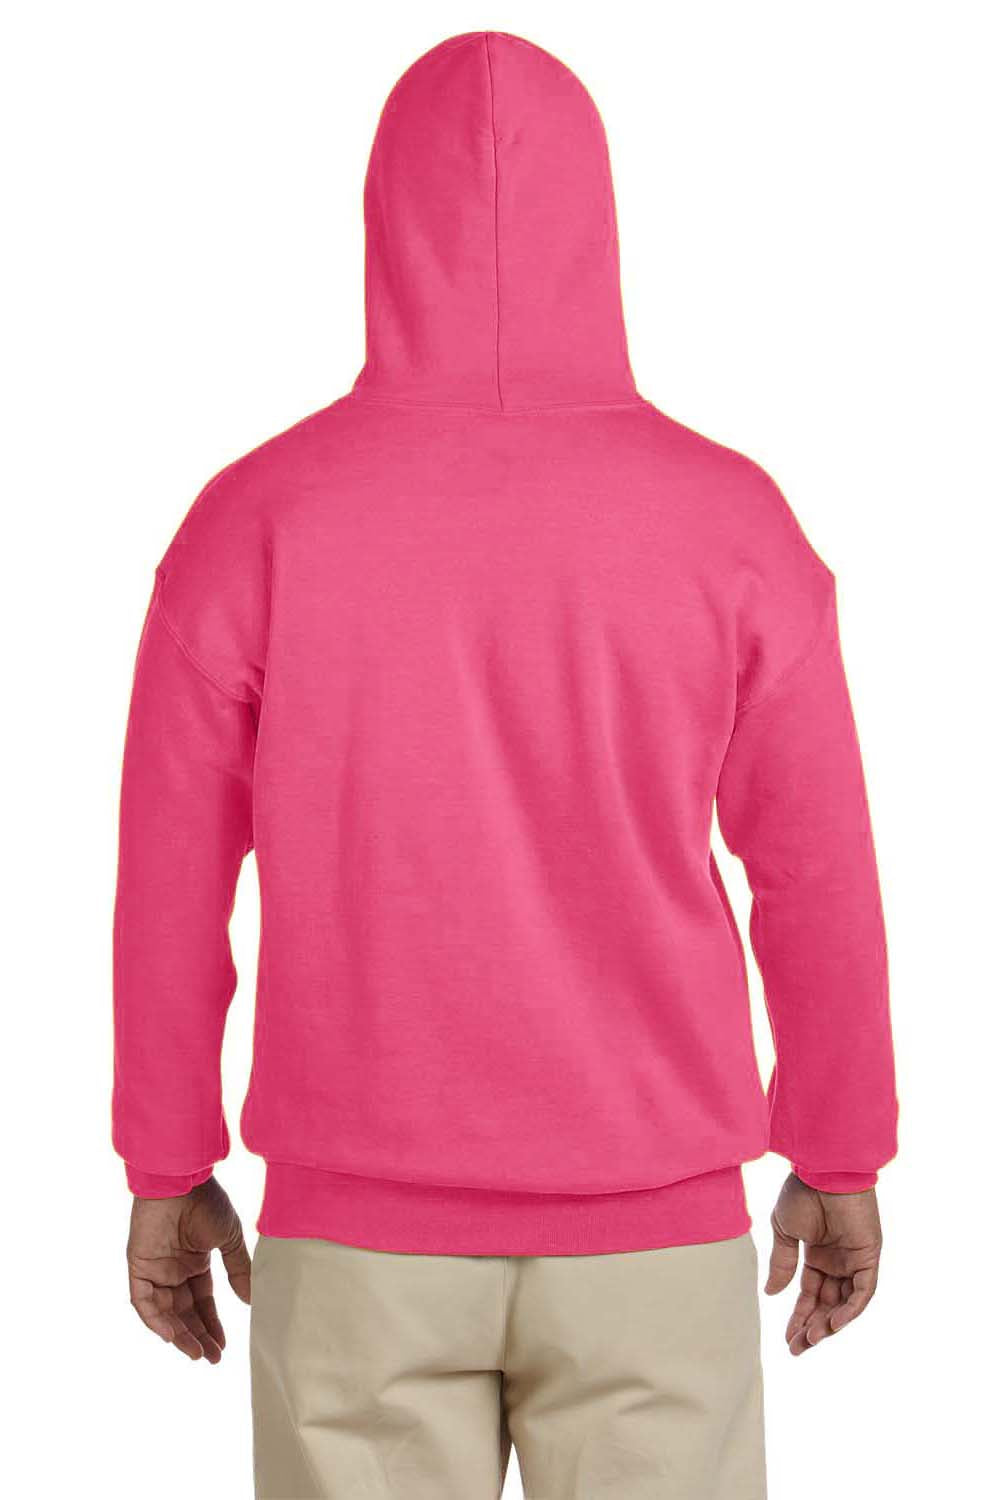 Gildan G185 Mens Hooded Sweatshirt Hoodie Safety Pink Back